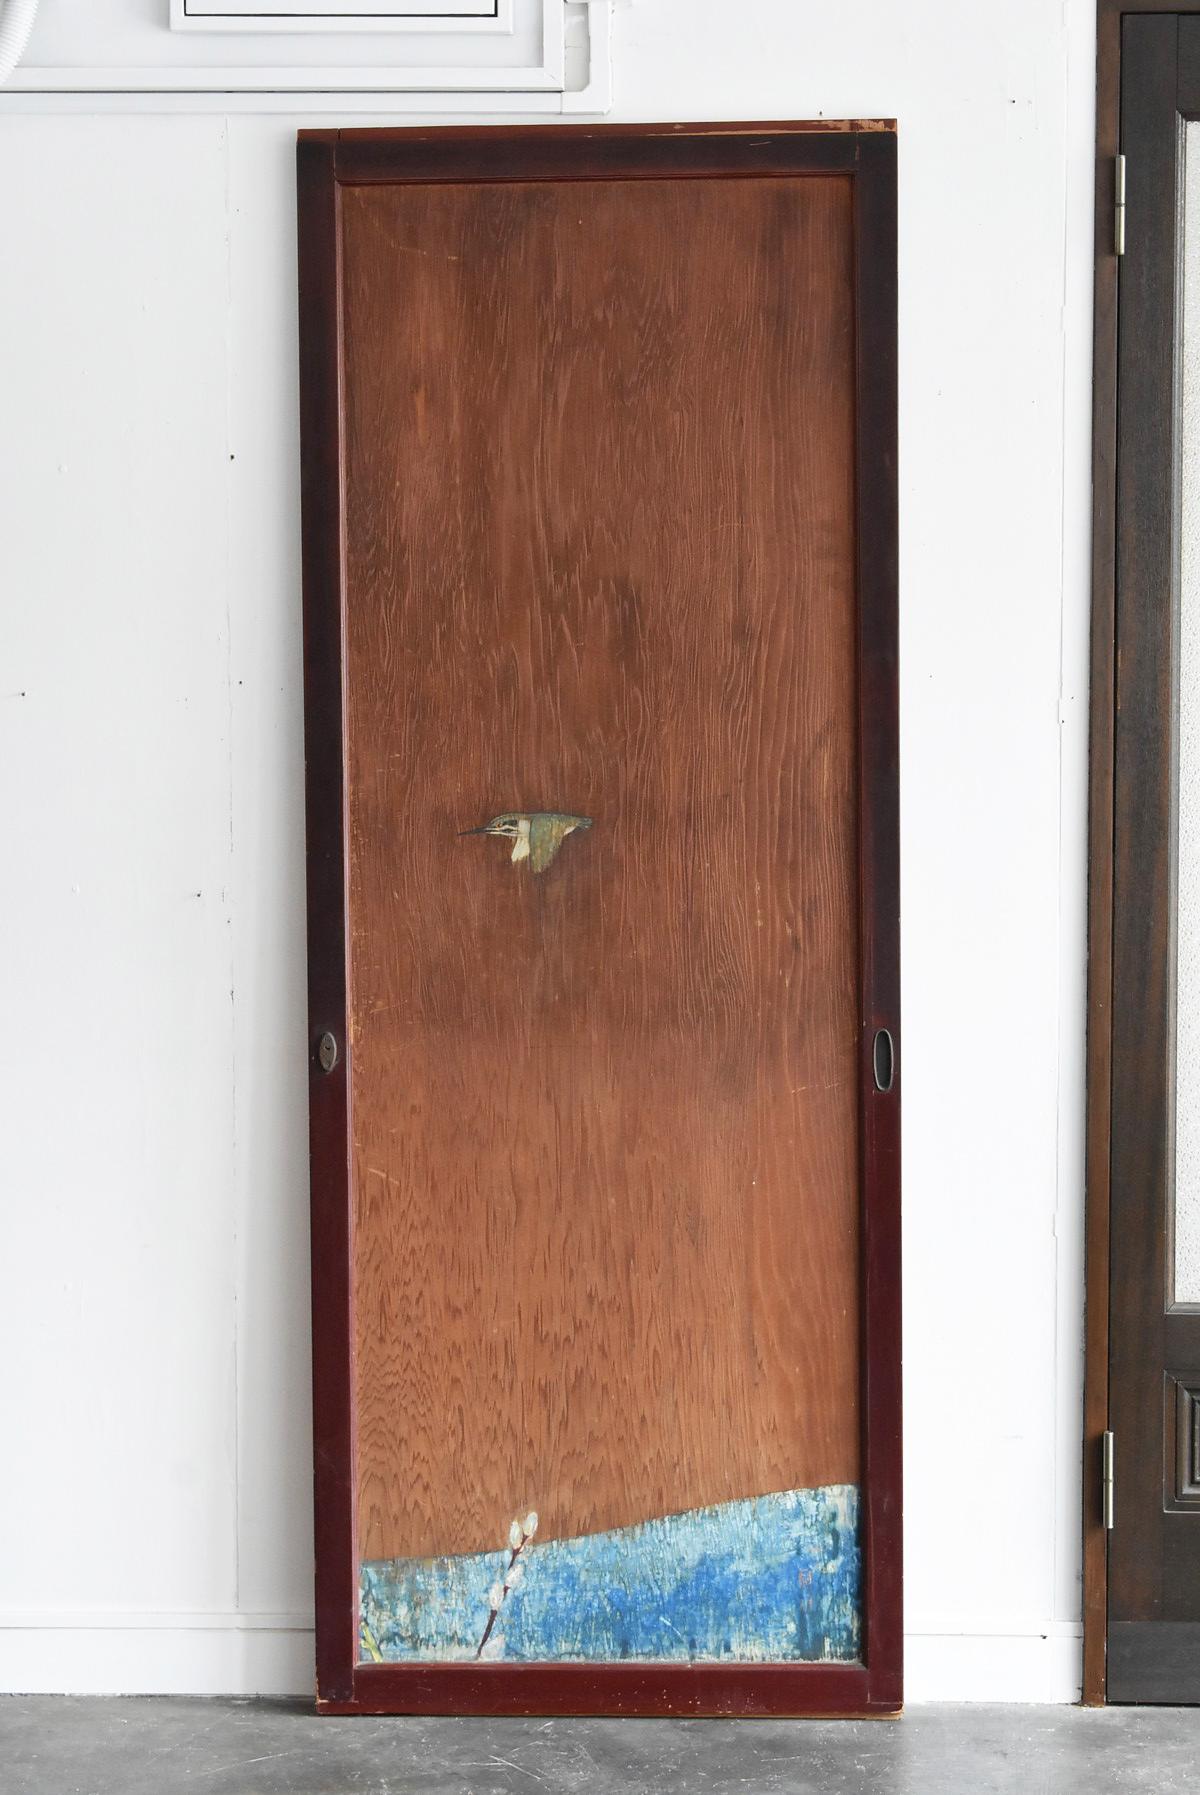 Japanese Antique Sliding Door / Wooden Door with Birds / Painting / Partition 1